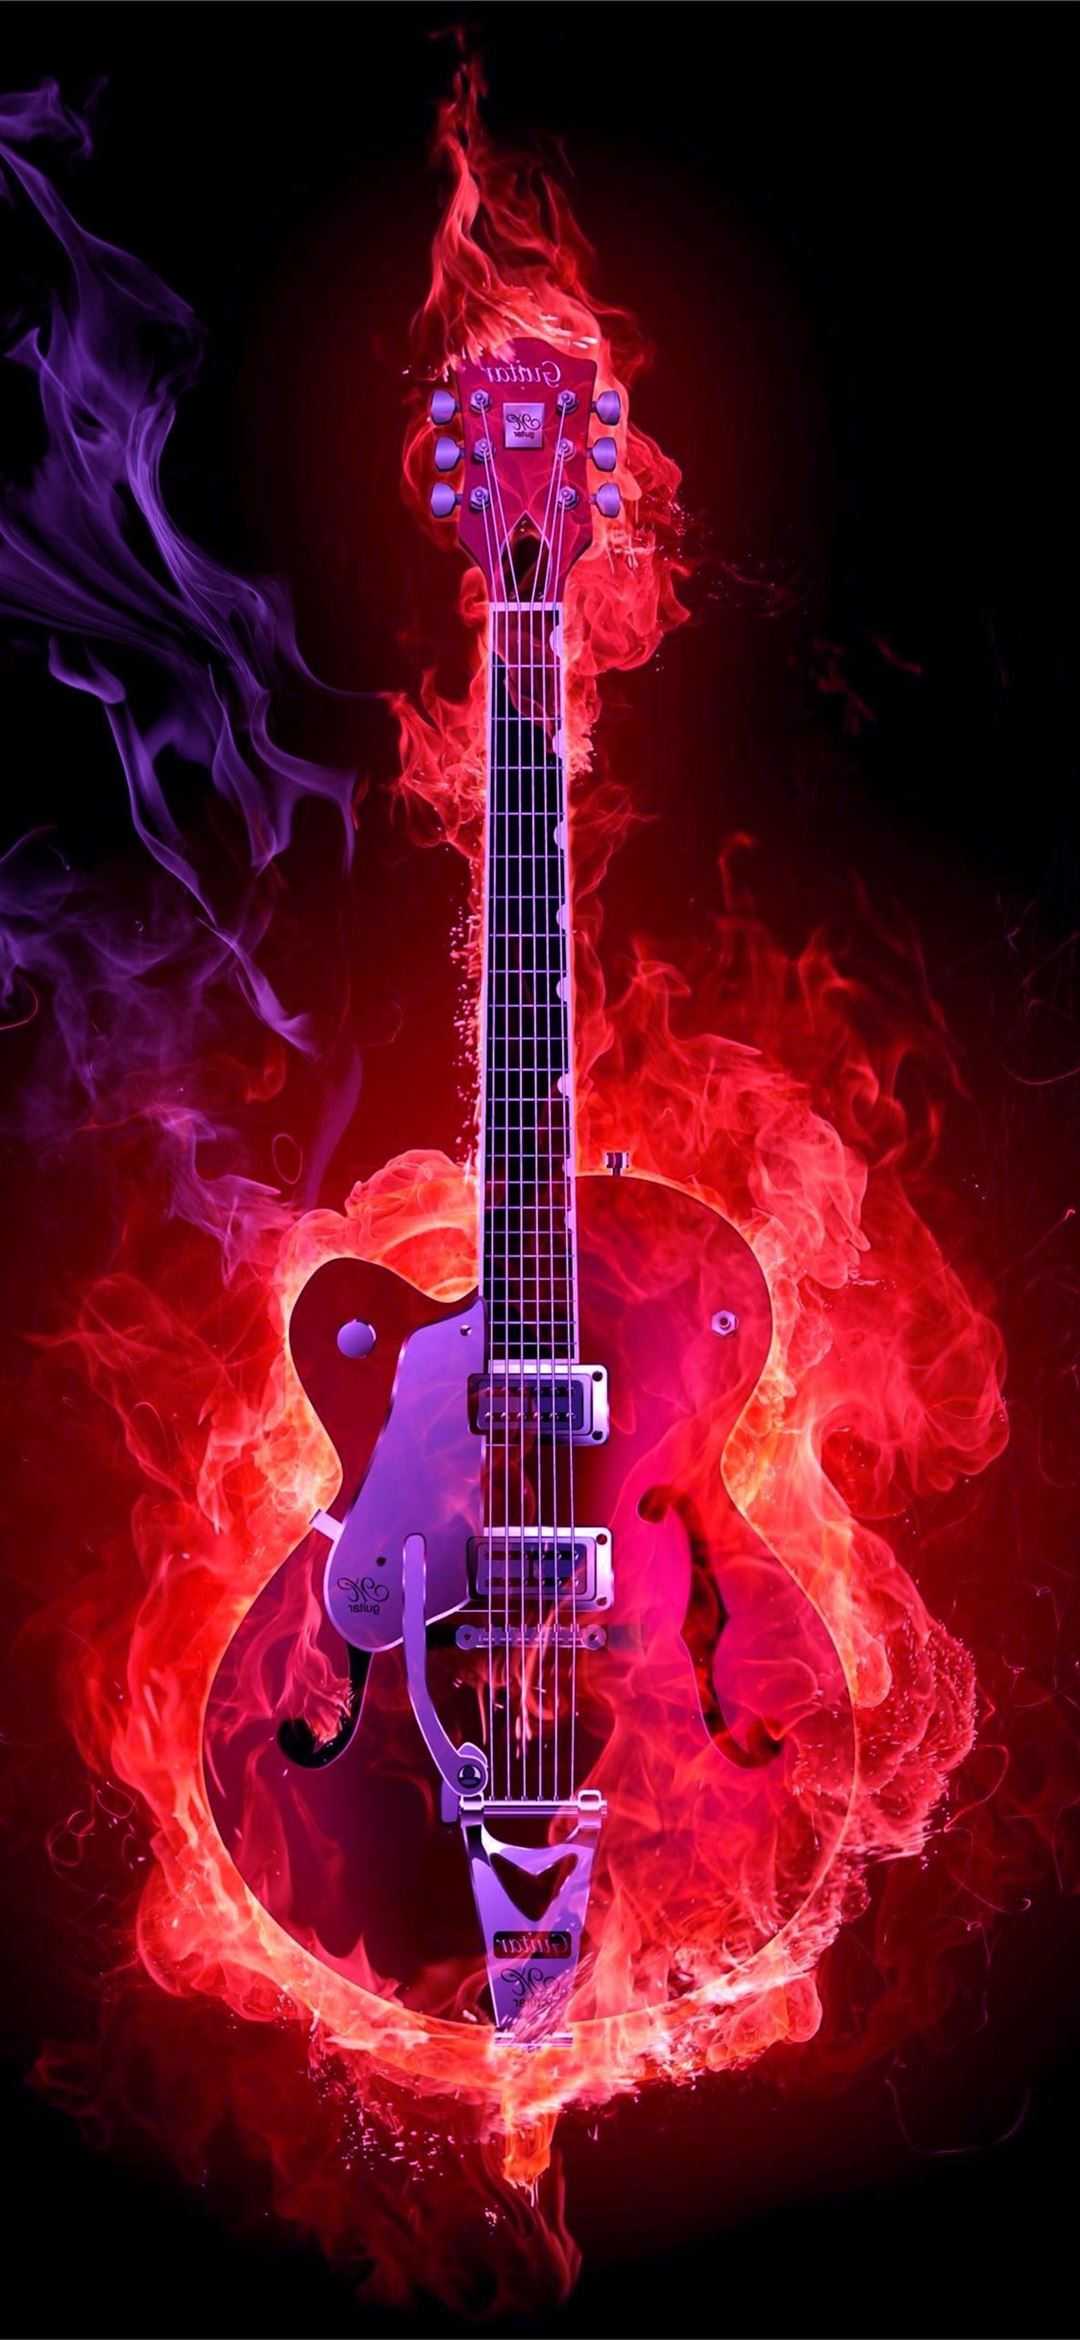 21+] 4K HD Guitar Wallpapers - WallpaperSafari